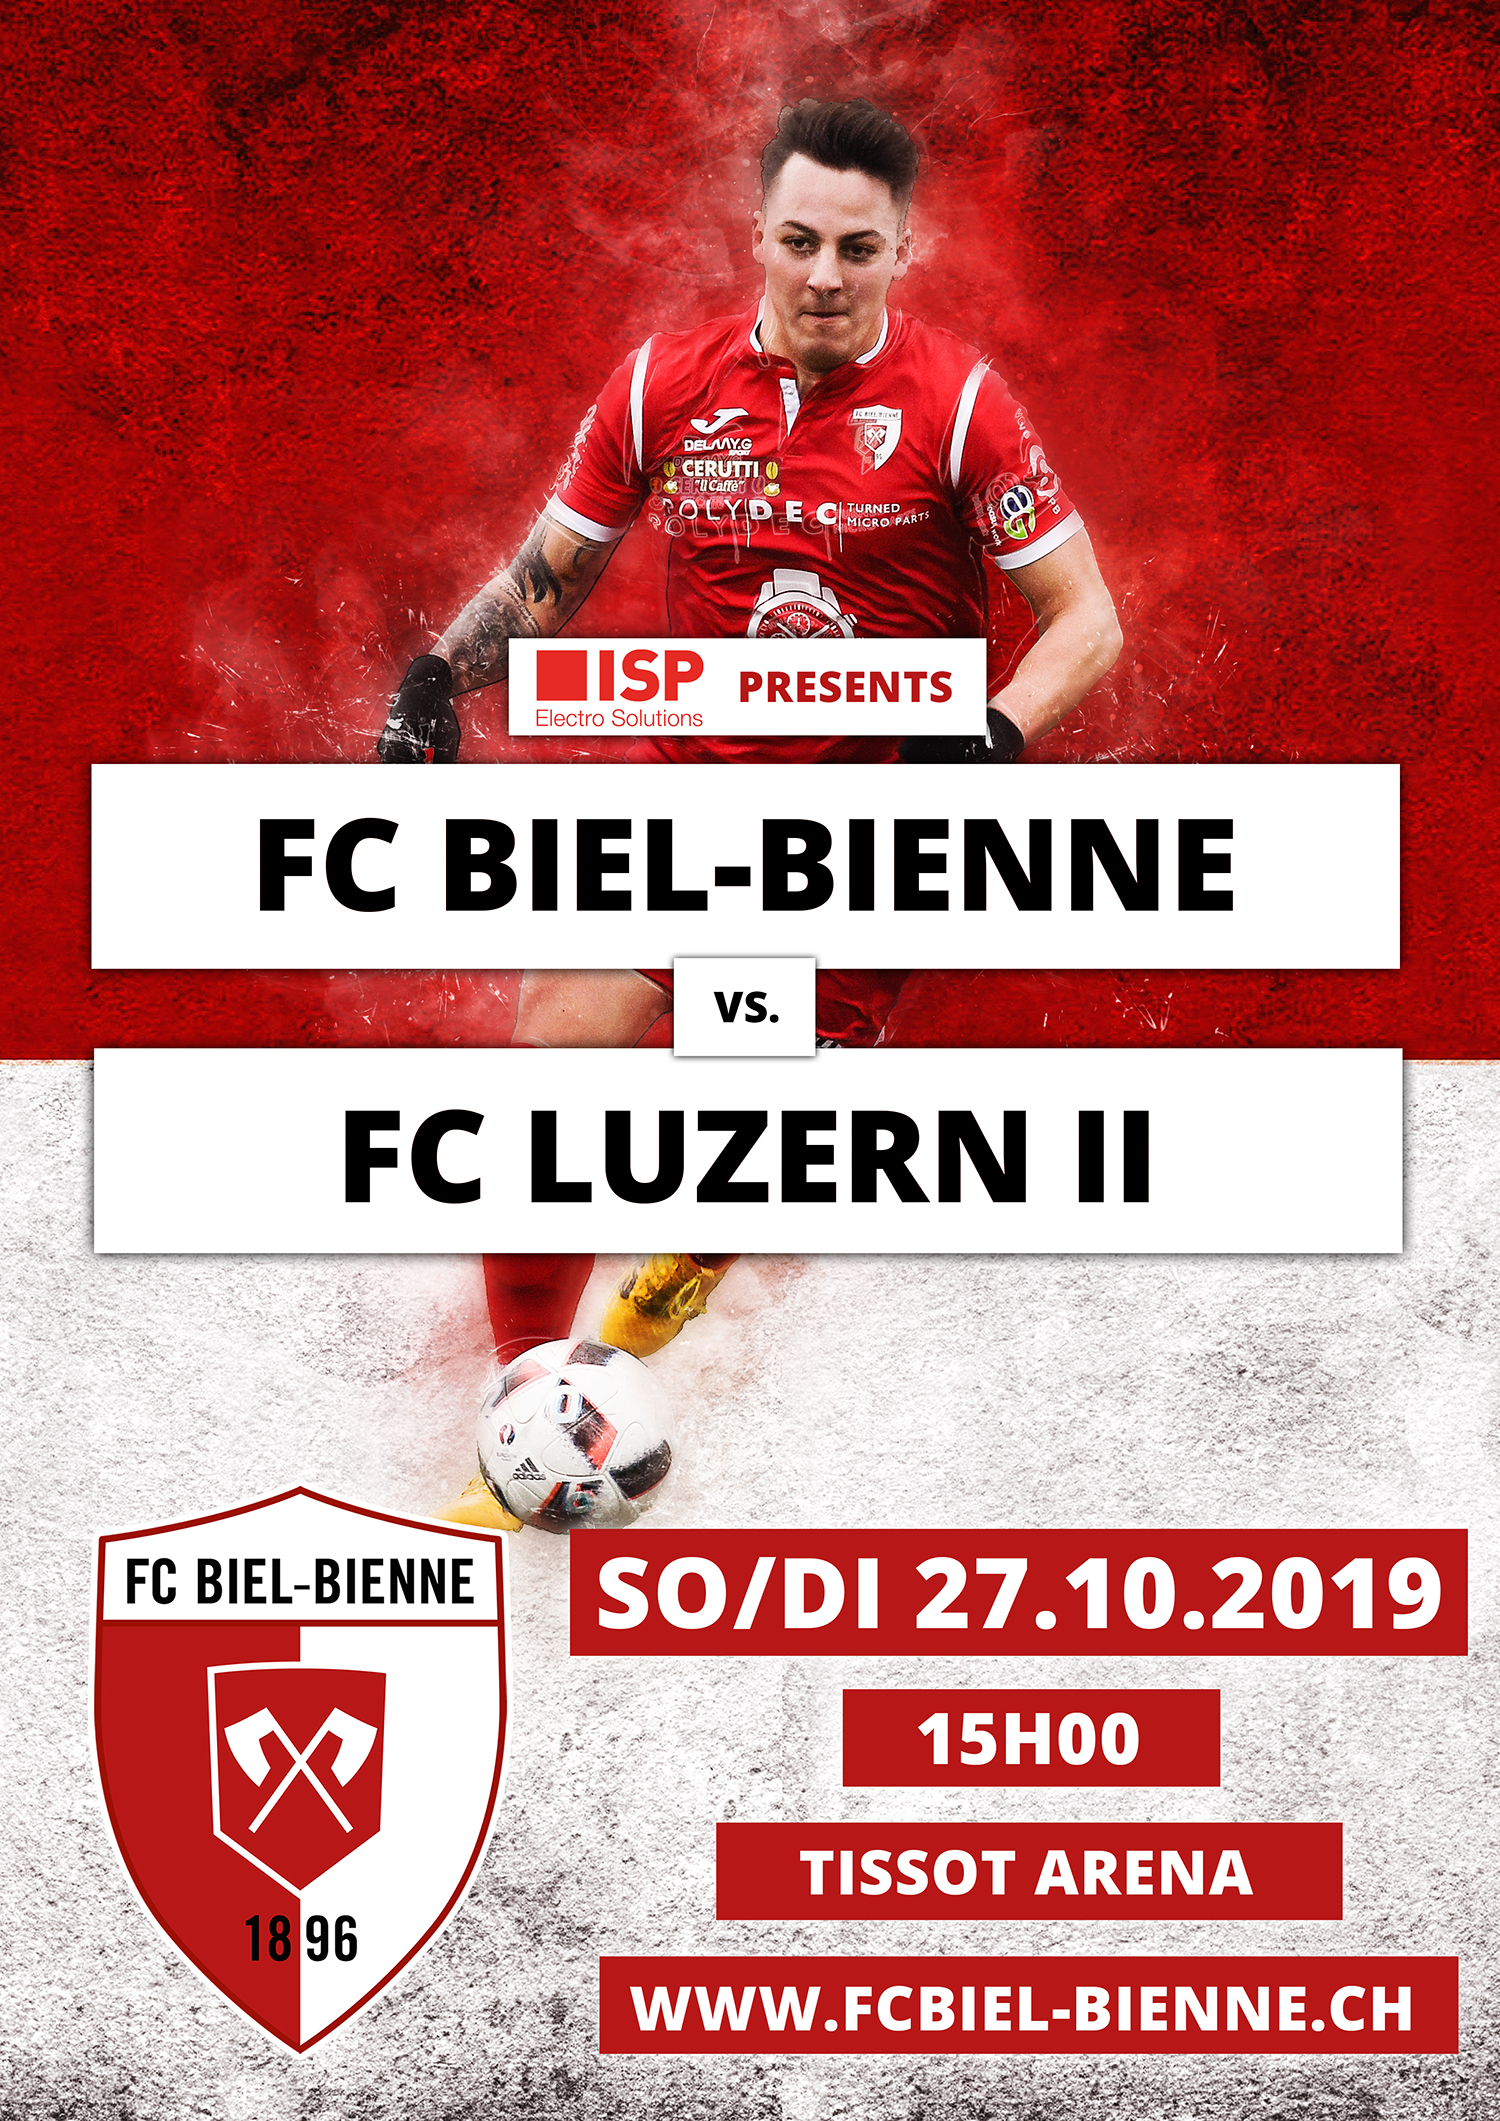 FC Biel-Bienne vs. FC Luzern II